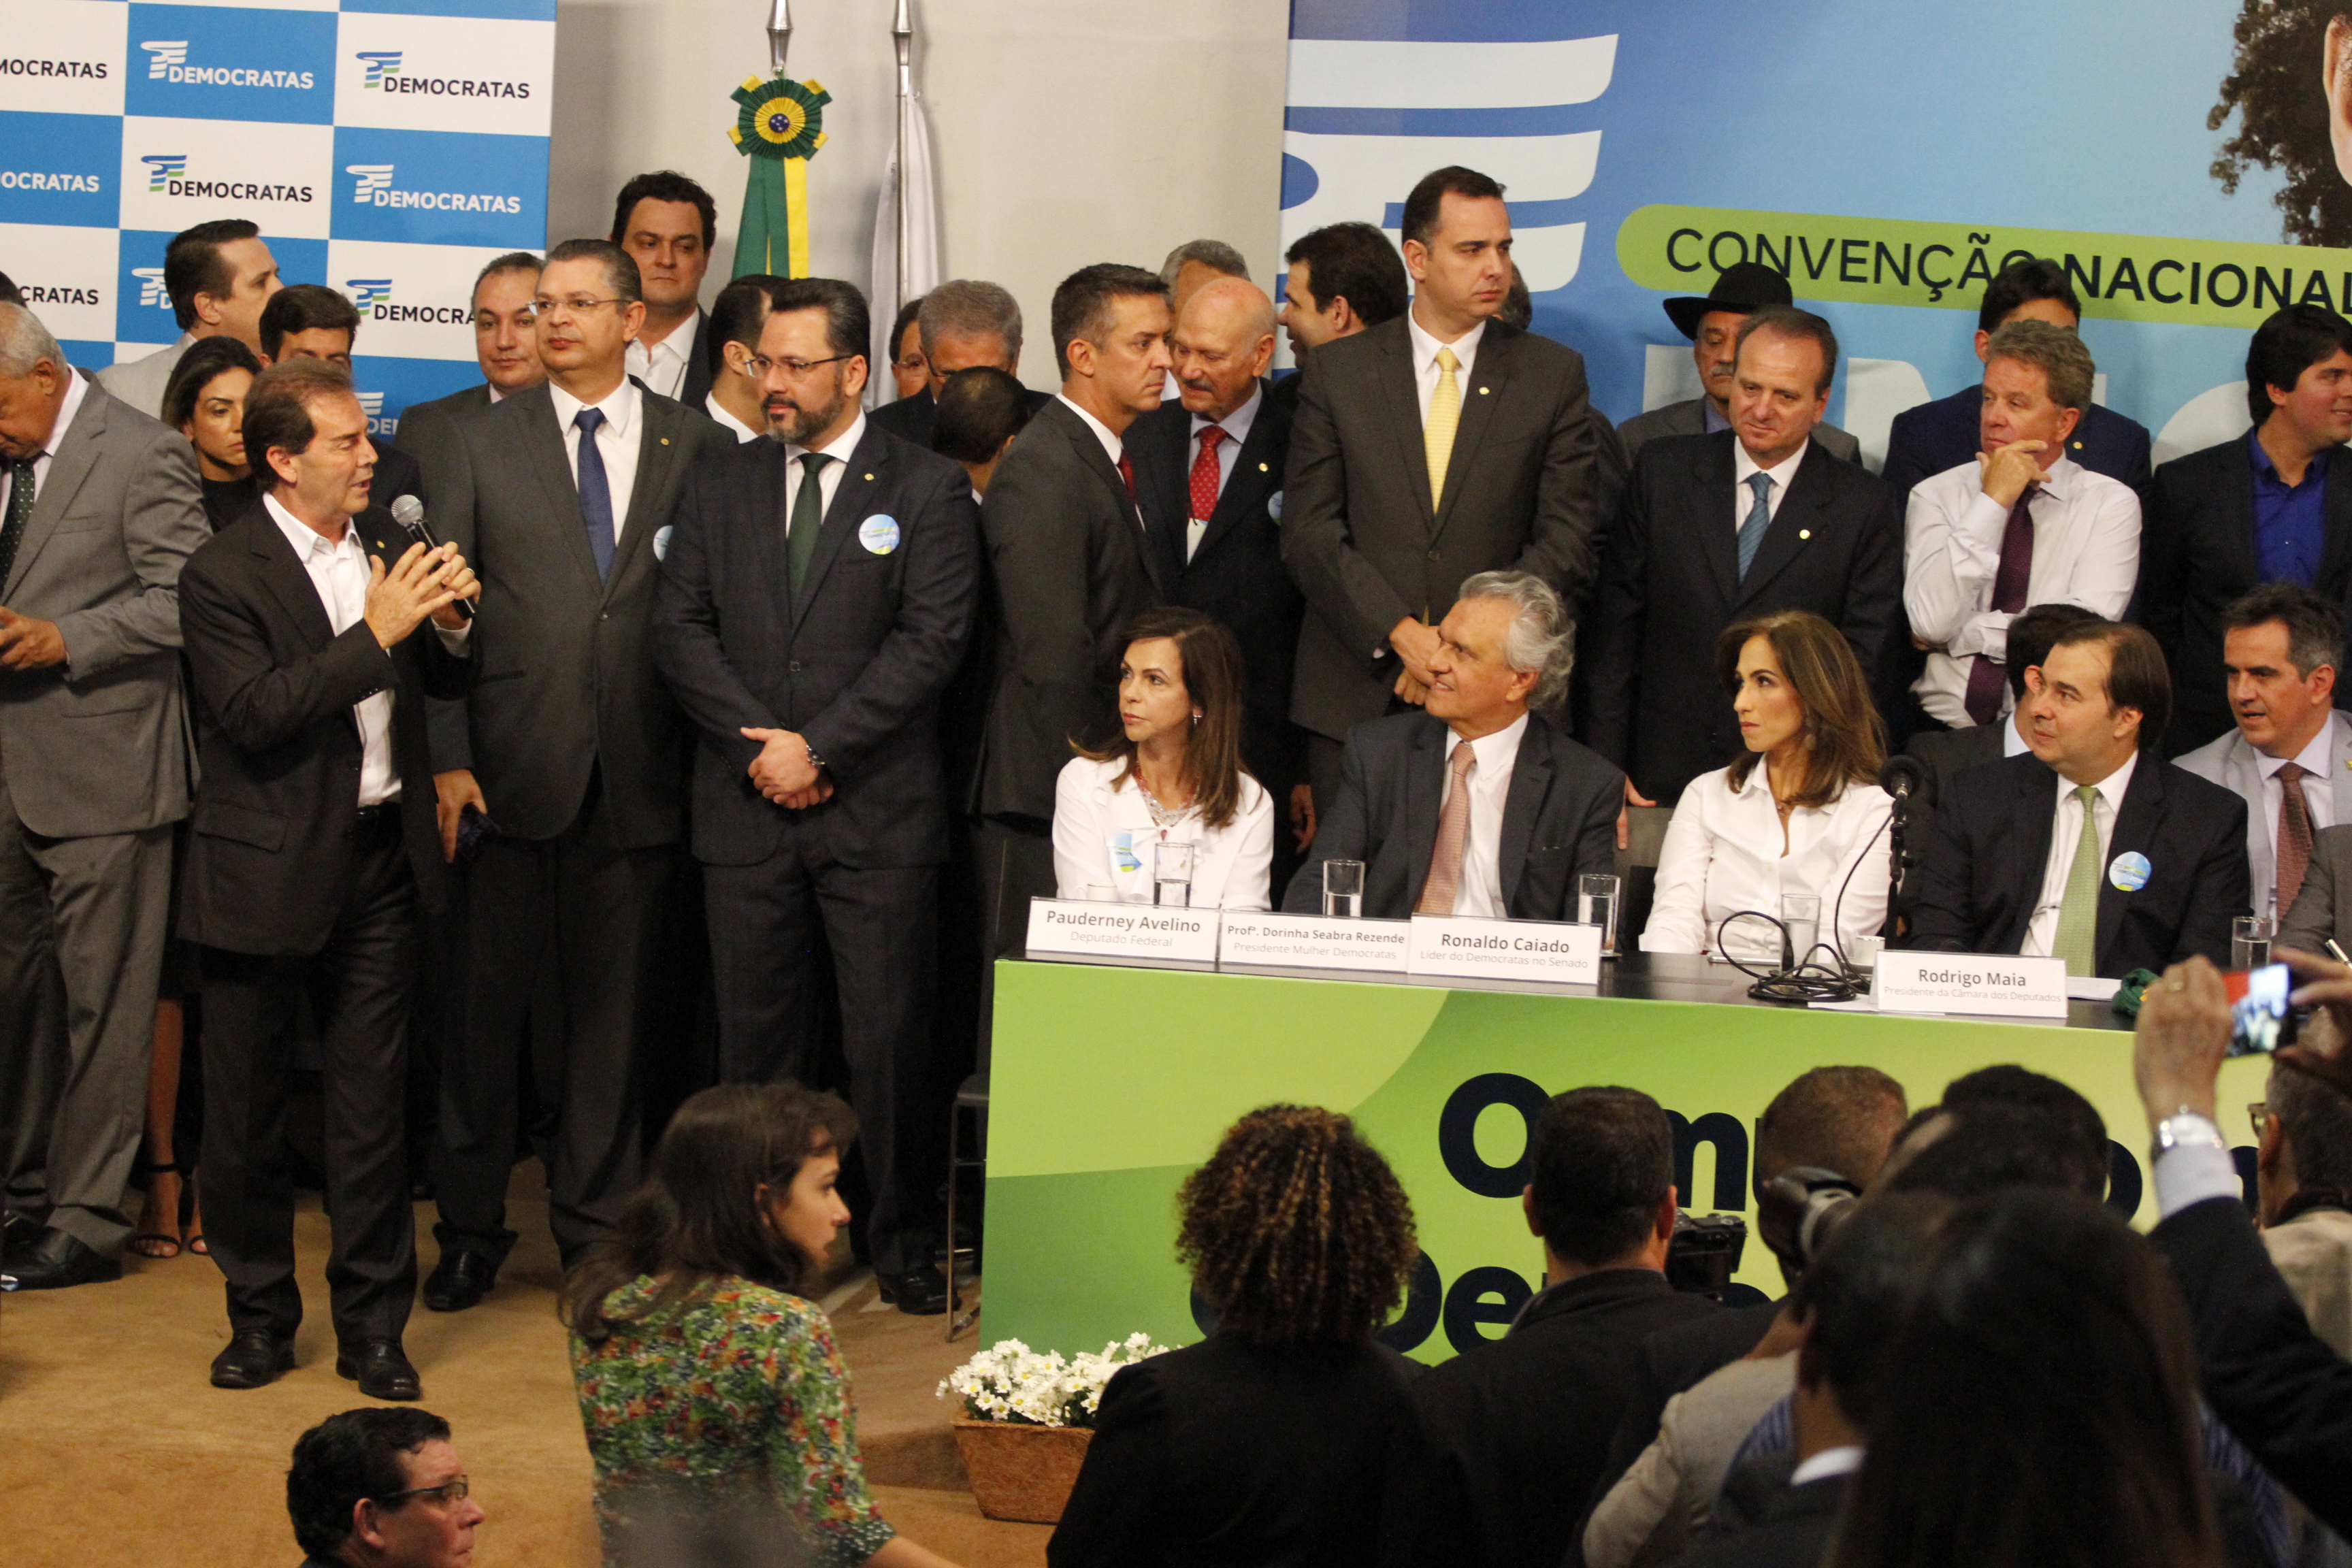 Paulinho da Força (Solidariedade-SP) esteve entre as lideranças políticas na Convenção / Foto: André Oliveira